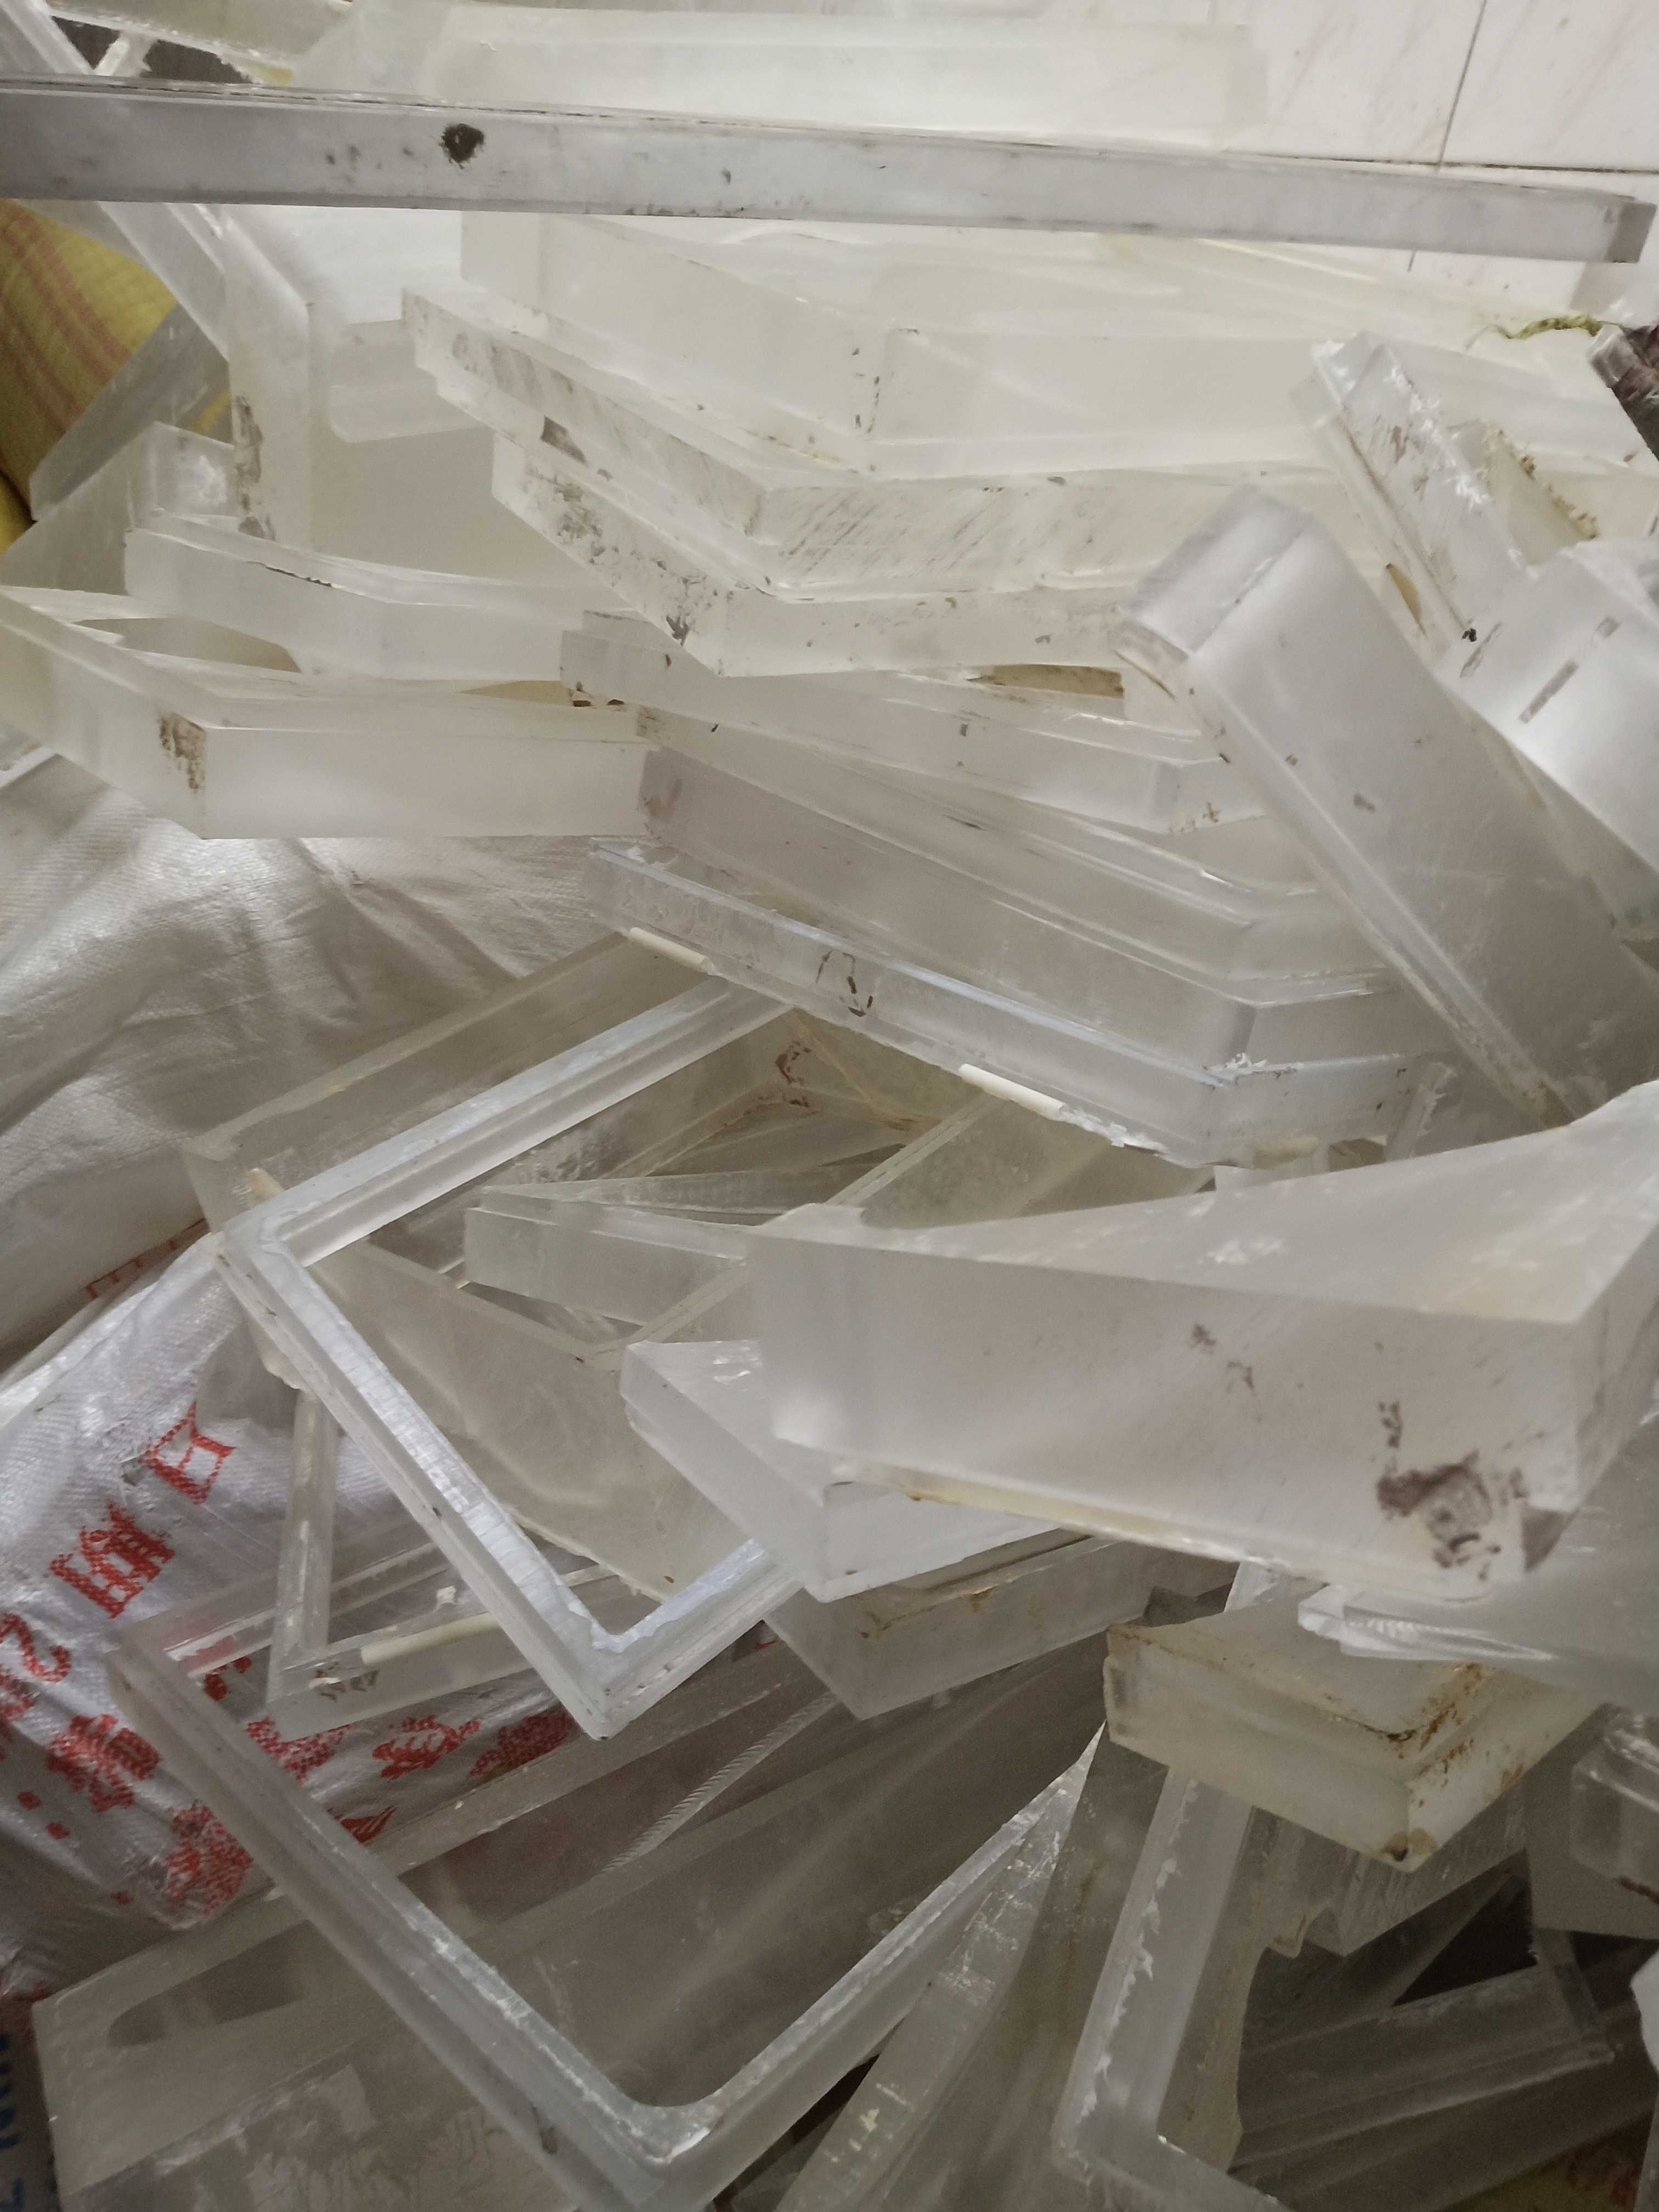 大朗塑胶回收 大朗塑胶回收价格 大朗废塑胶回收 大朗回收塑胶废品